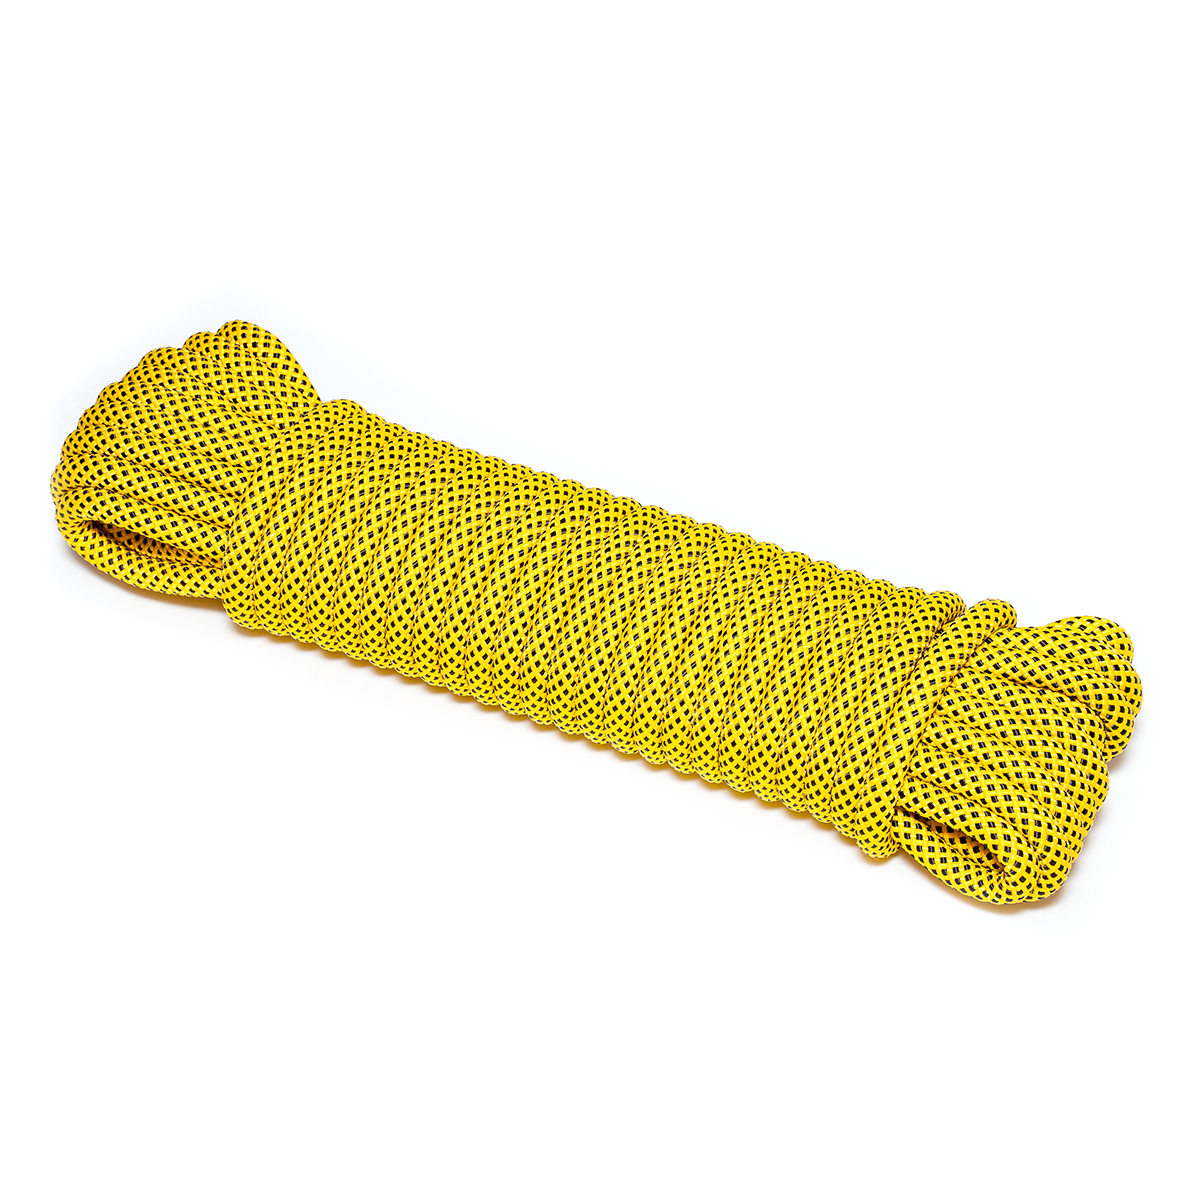 Шнур плетеный ЭКСТРИМ 12.0 мм, черно-желтый, 1400 кг, 20 м шнур для вязания 100% полиэфир 1мм 200м 75±10гр 07 золотой